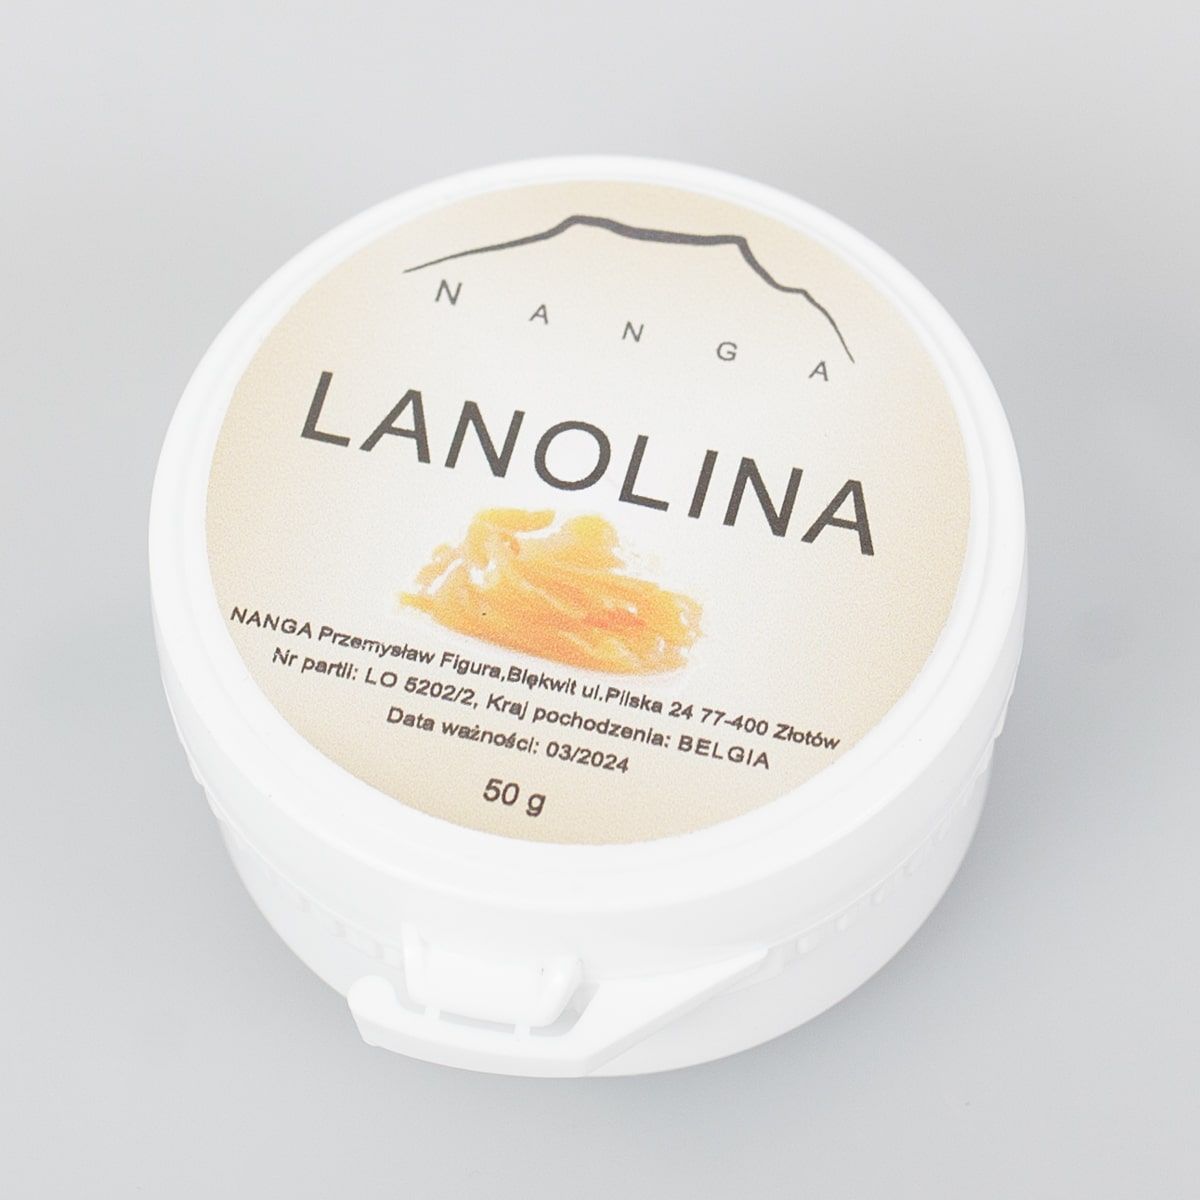 Lanolina premium